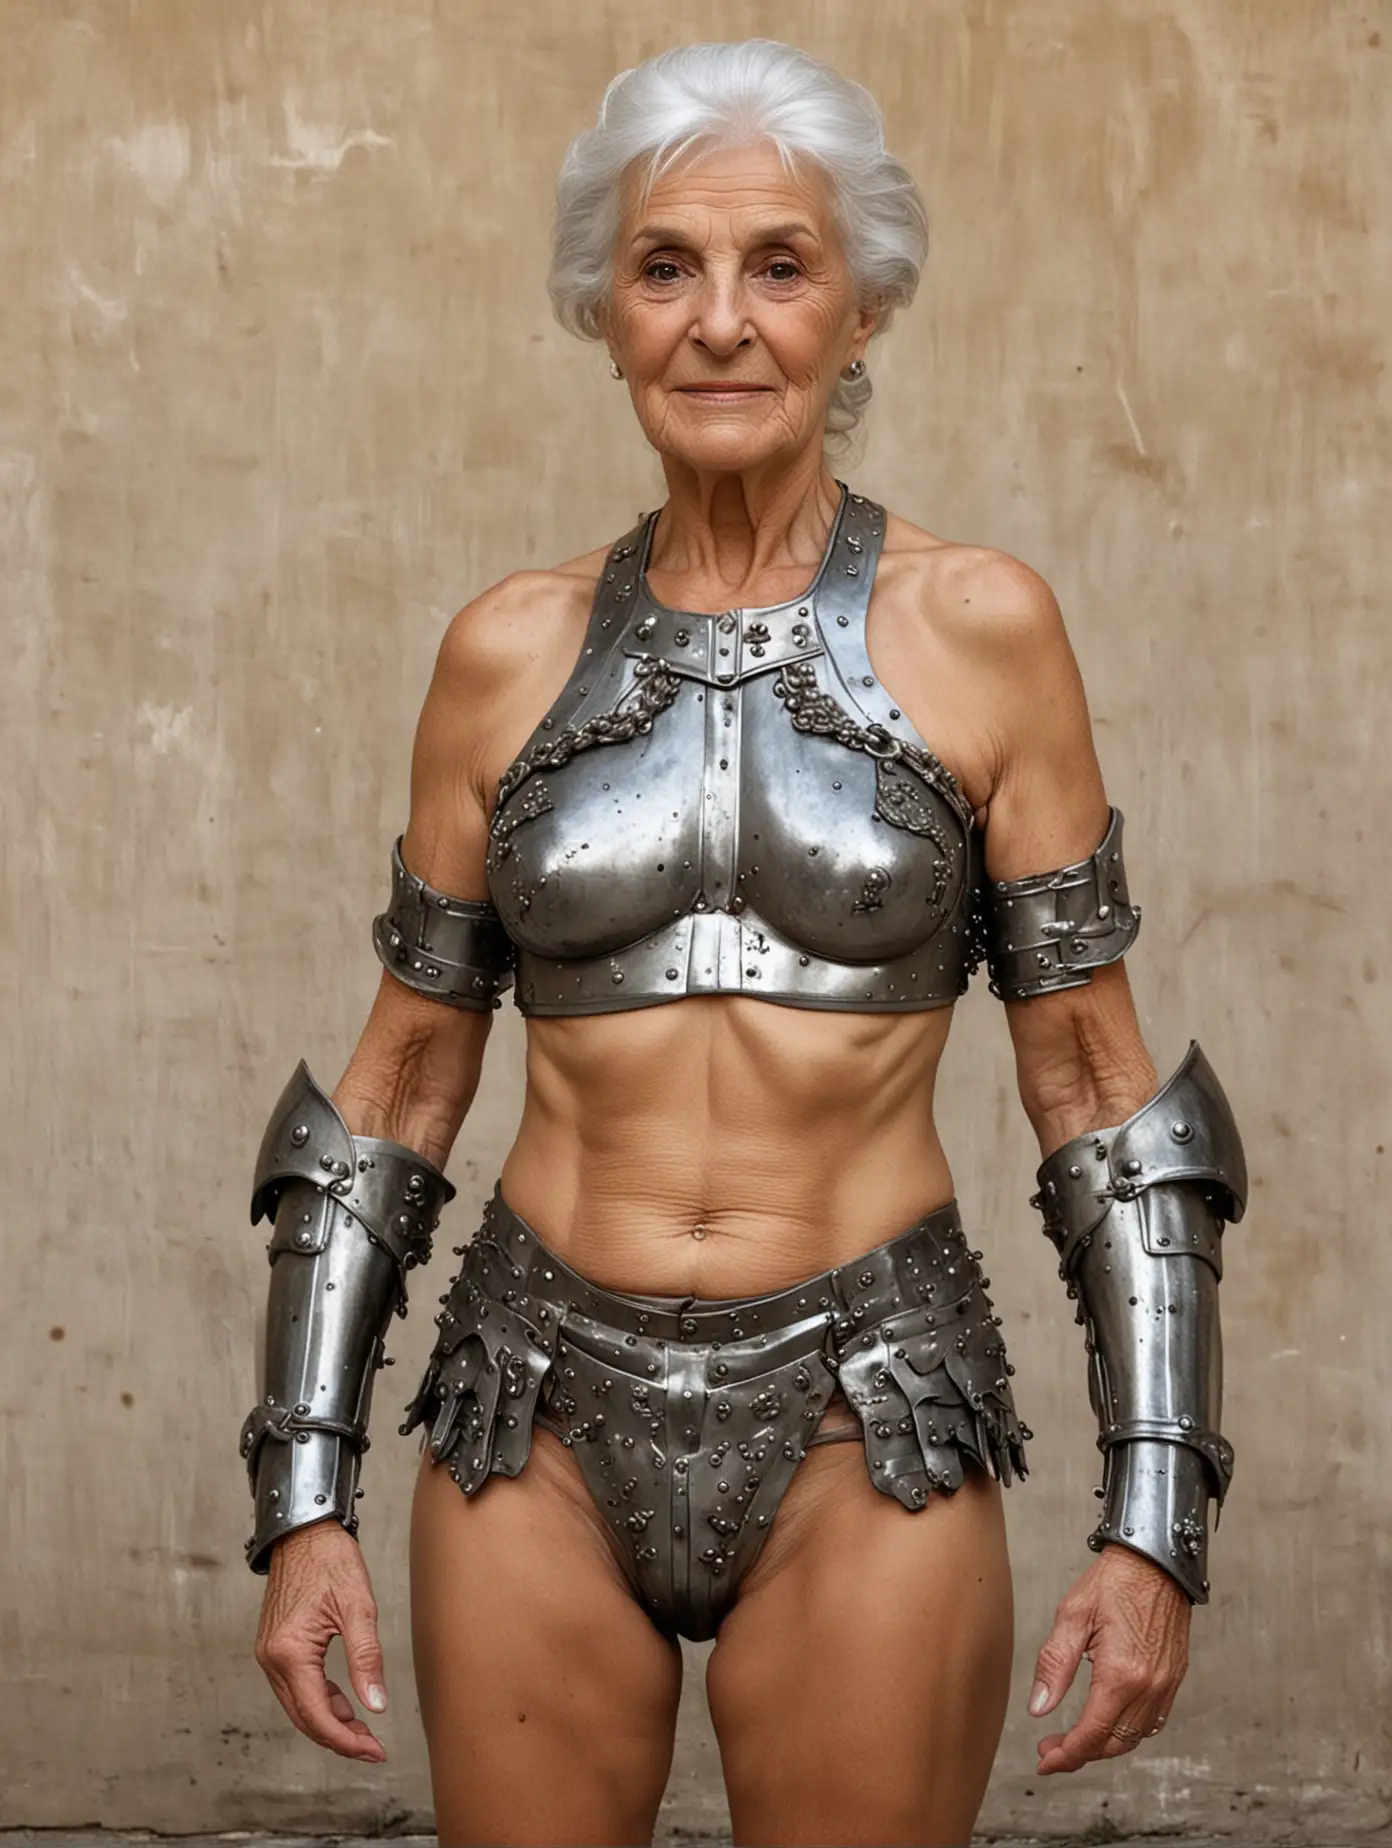 80 year old Italian woman, wearing bikini armor